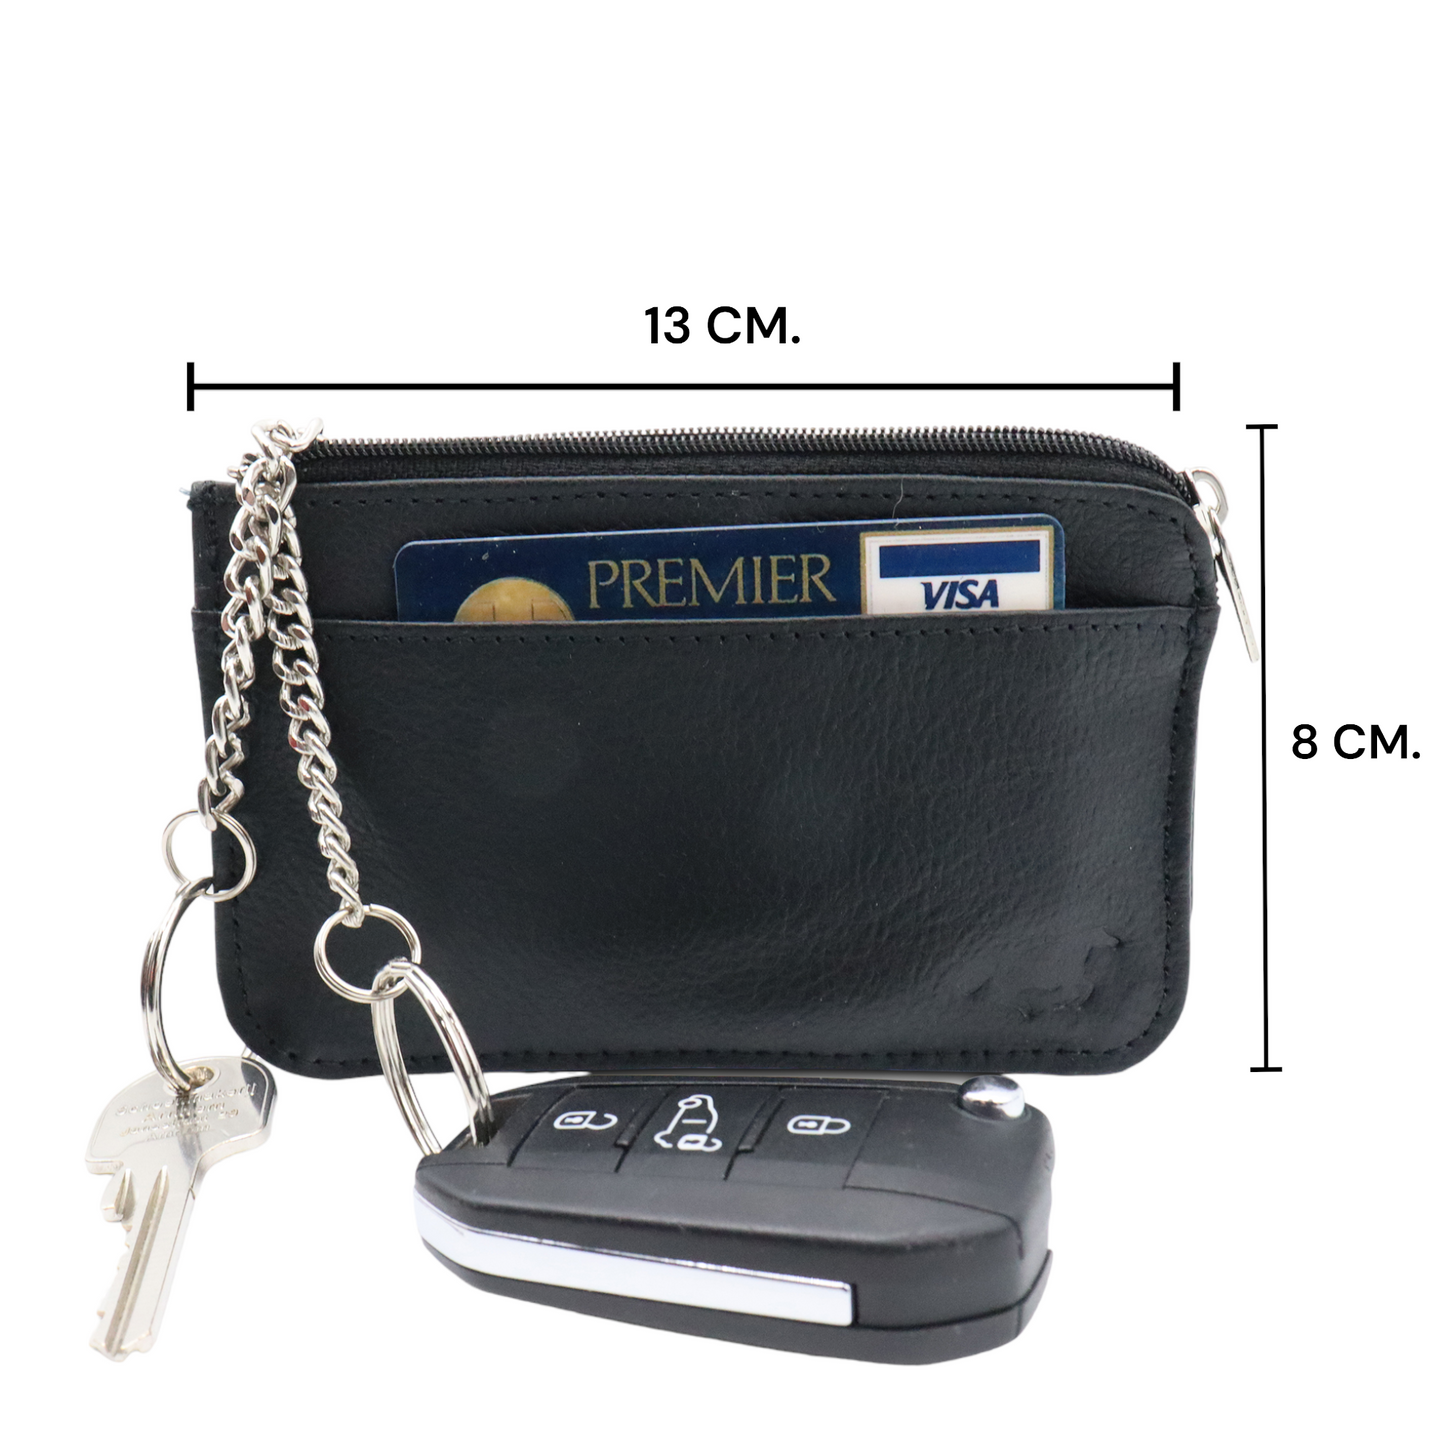 Safekeepers Schlüsseletui mit Reißverschluss - Schlüsseletui - Schlüsseltasche - Schlüsseletui mit Reißverschluss - Schlüsseltasche - 2 Ketten - Leder 